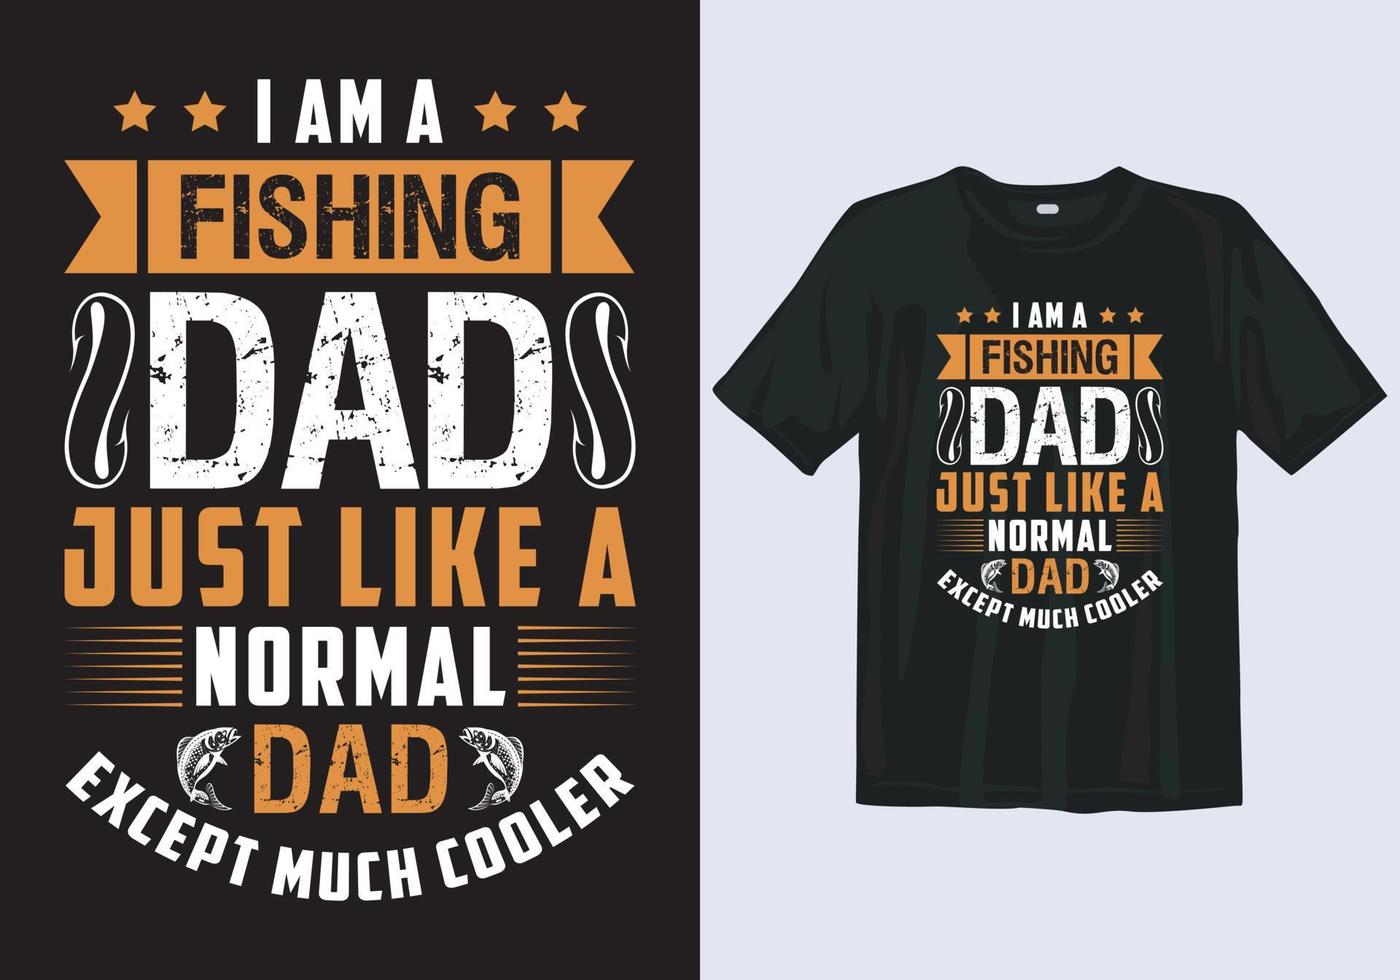 eccezionale tipografia pesca papà maglietta design modello per Il padre di giorno vettore